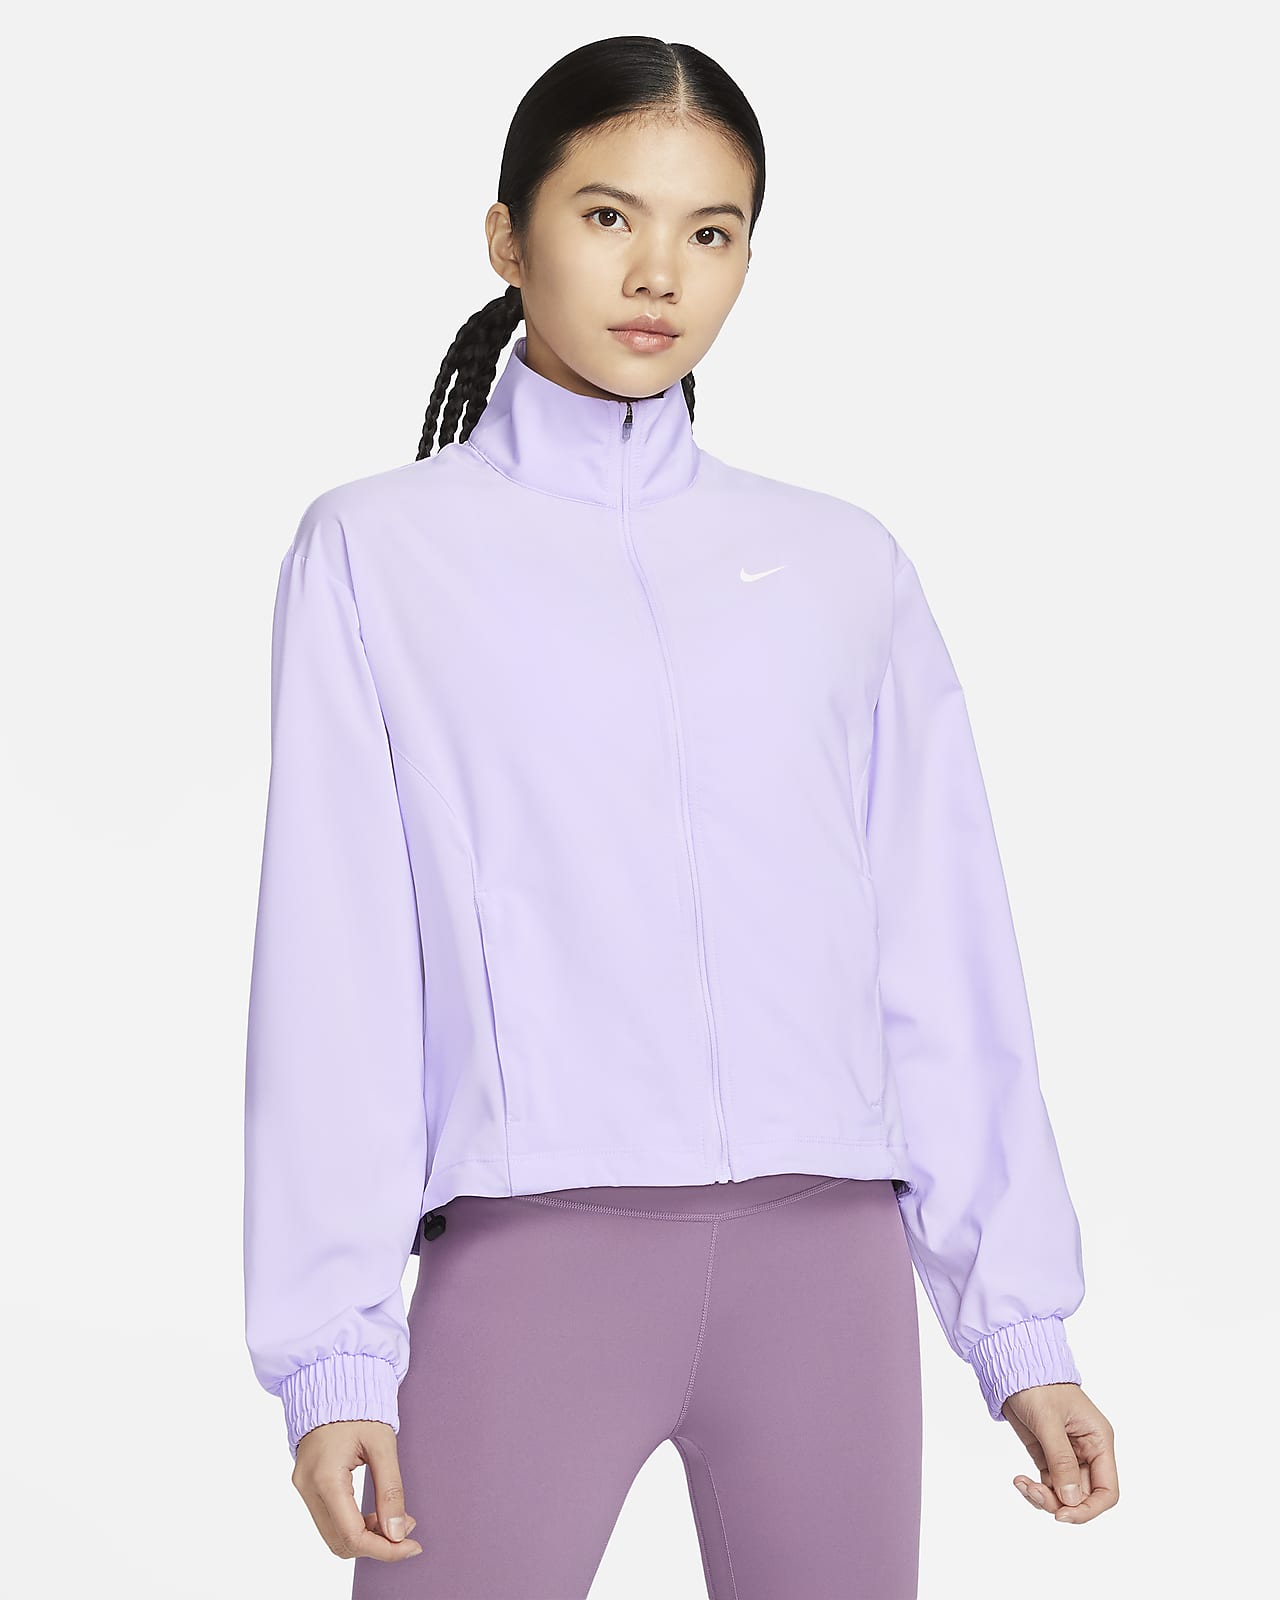 Nike Dri-FIT One Women's Jacket